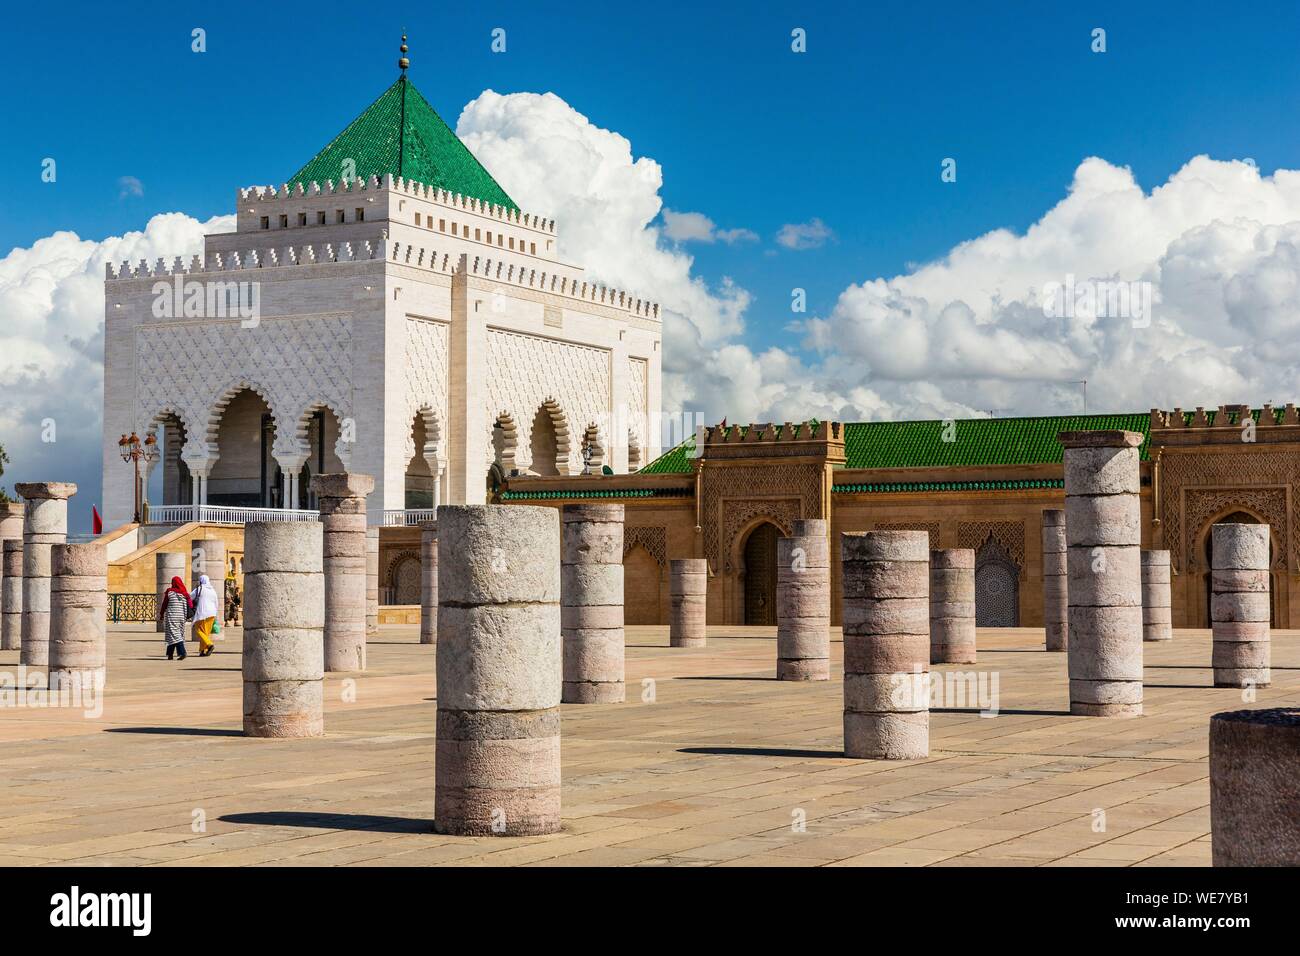 Maroc, Rabat, classé au Patrimoine Mondial de l'UNESCO, l'esplanade de la mosquée Yacoub el-Mansour, le Mausolée Mohammed V Banque D'Images